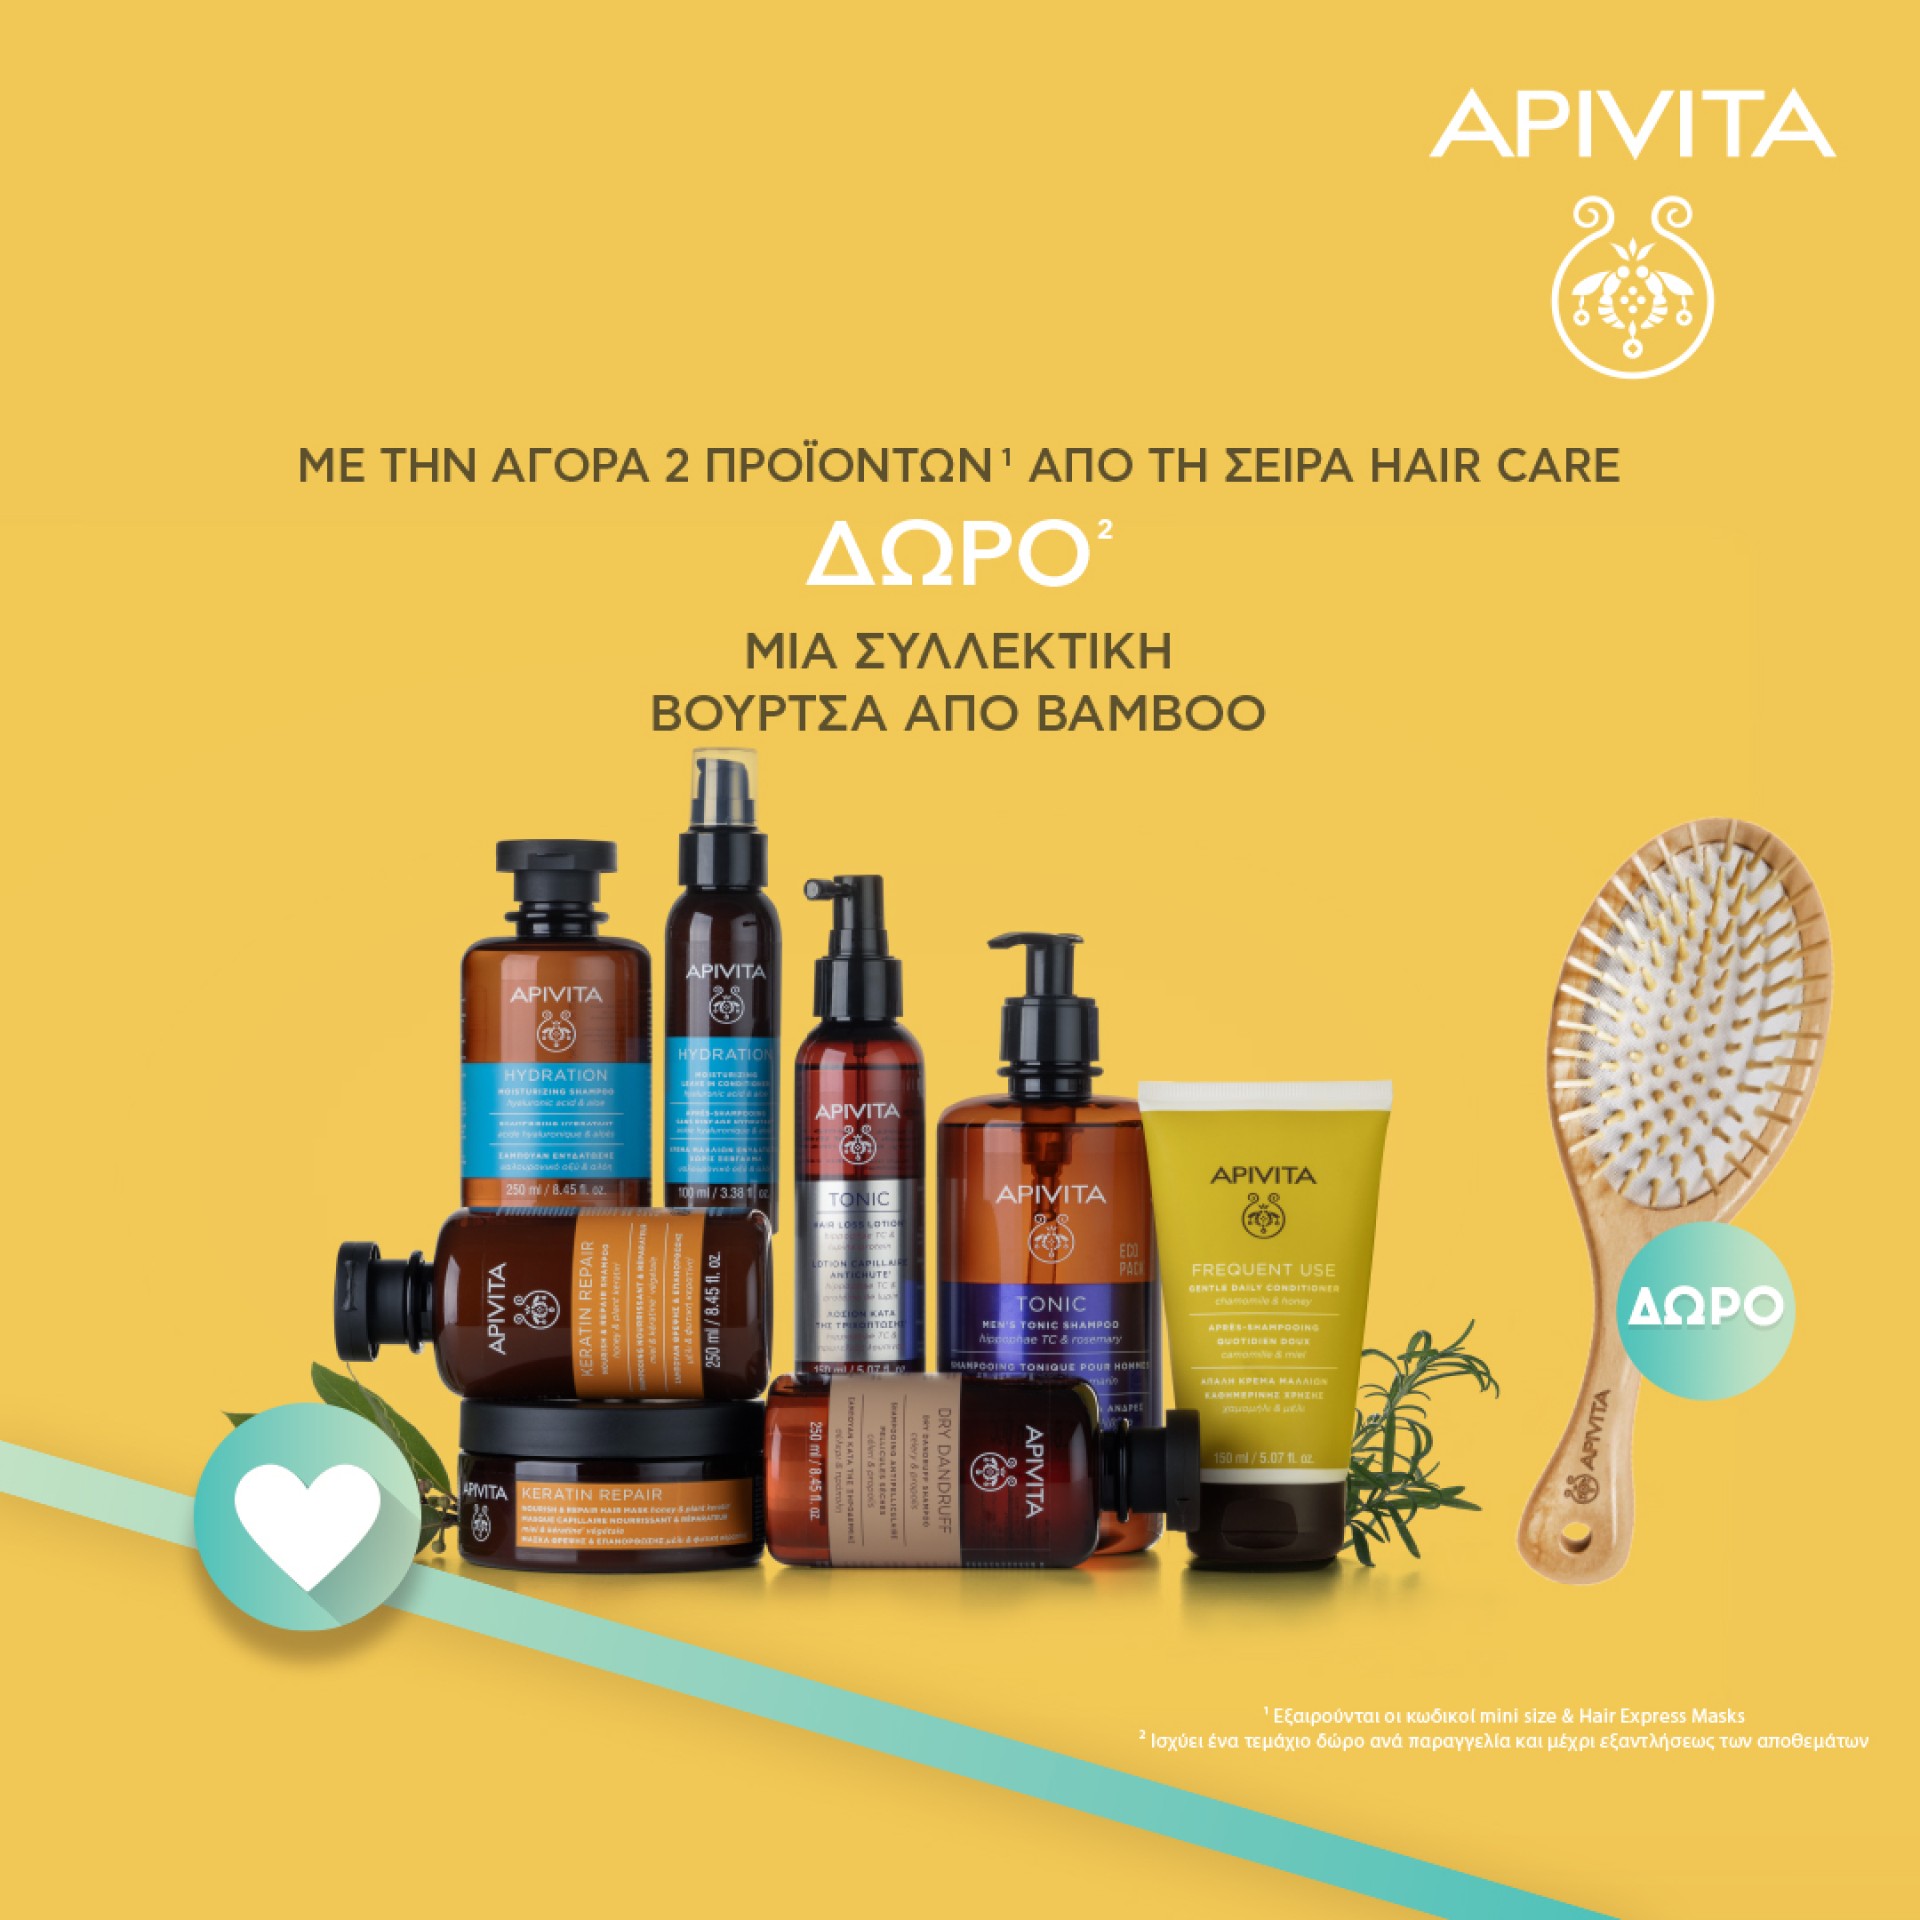 Με την αγορά 2 προϊόντων από την σειρά Hair Care της Apivita,